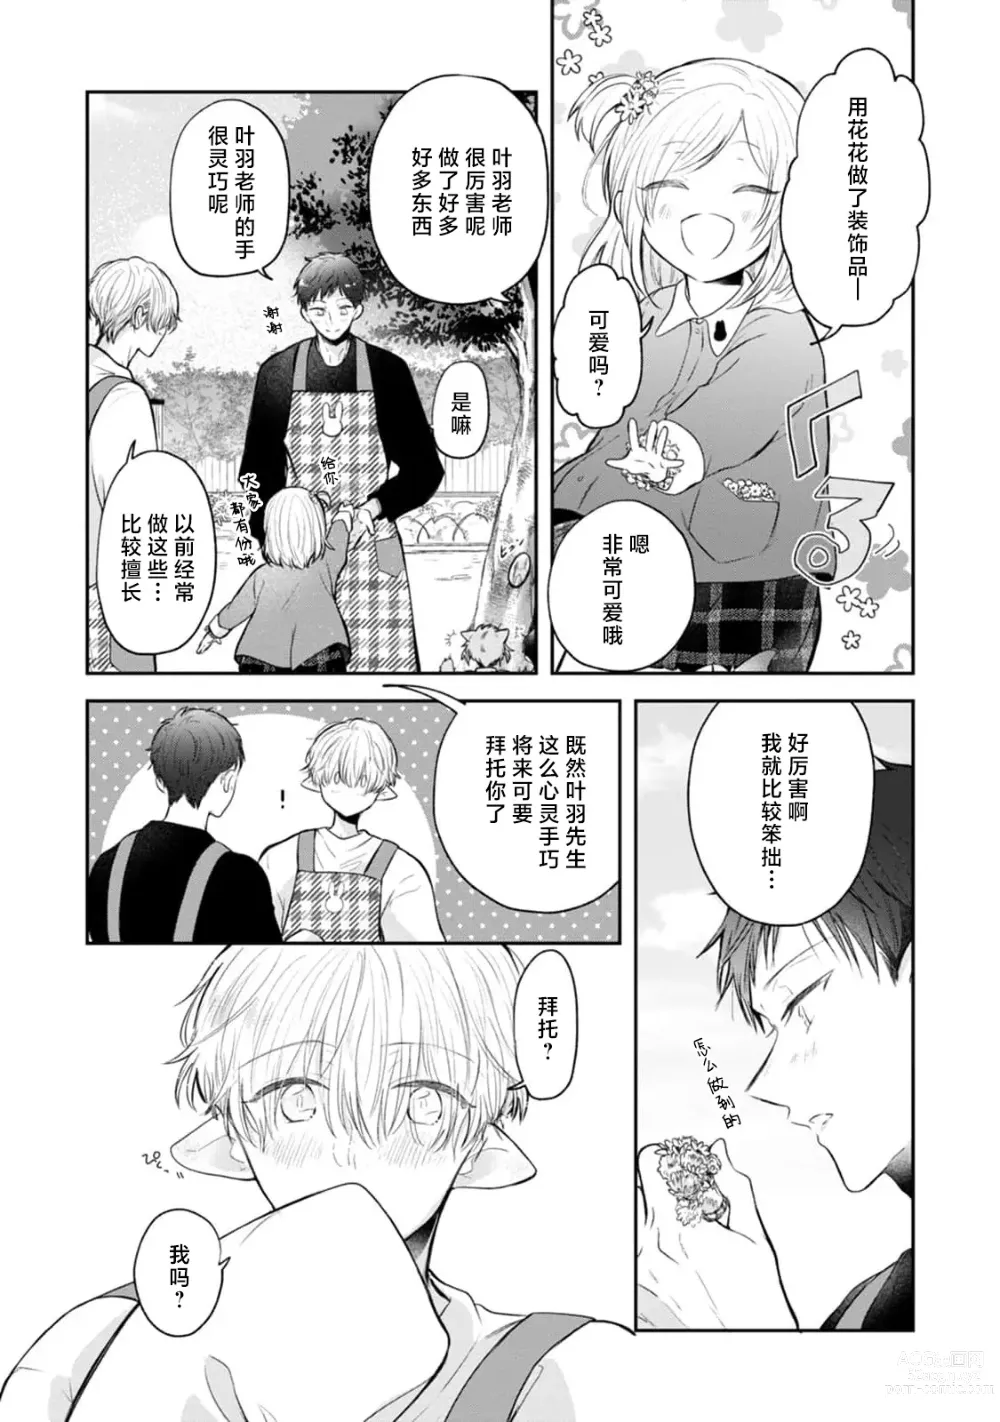 Page 14 of manga 叶羽老师全部是第一次 1-4